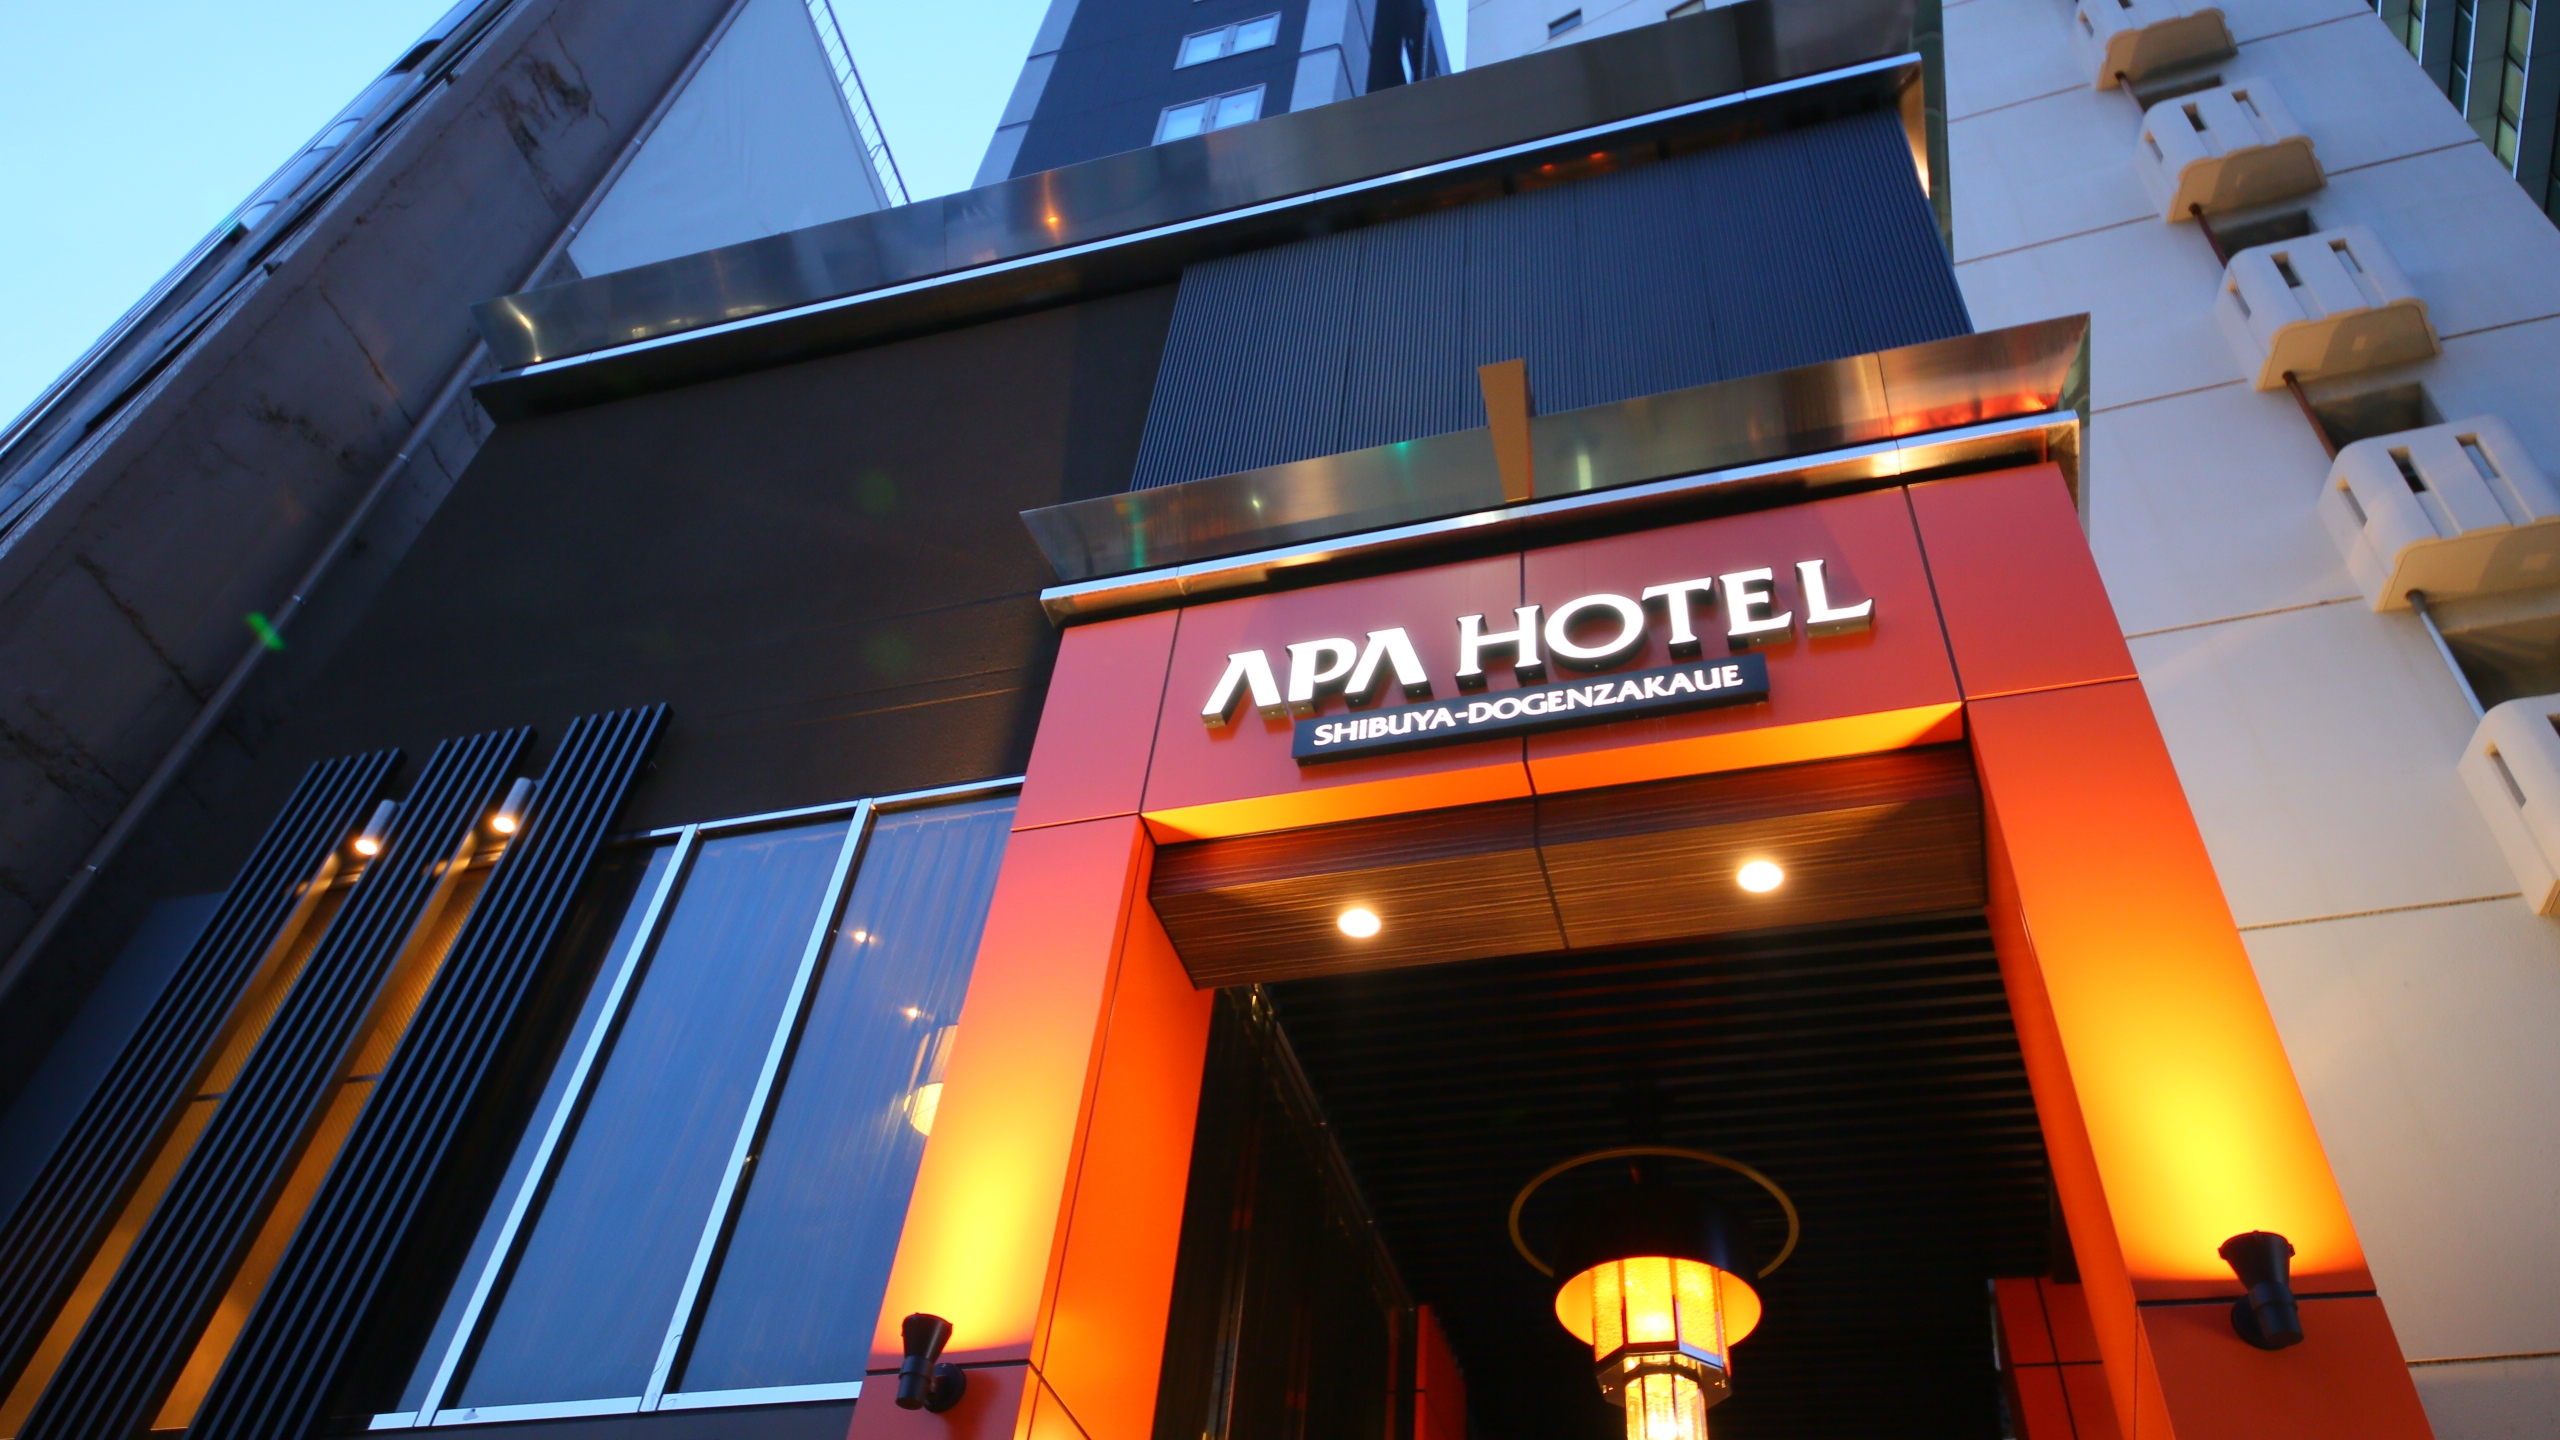 APA Hotel Shibuya Dogenzakaue